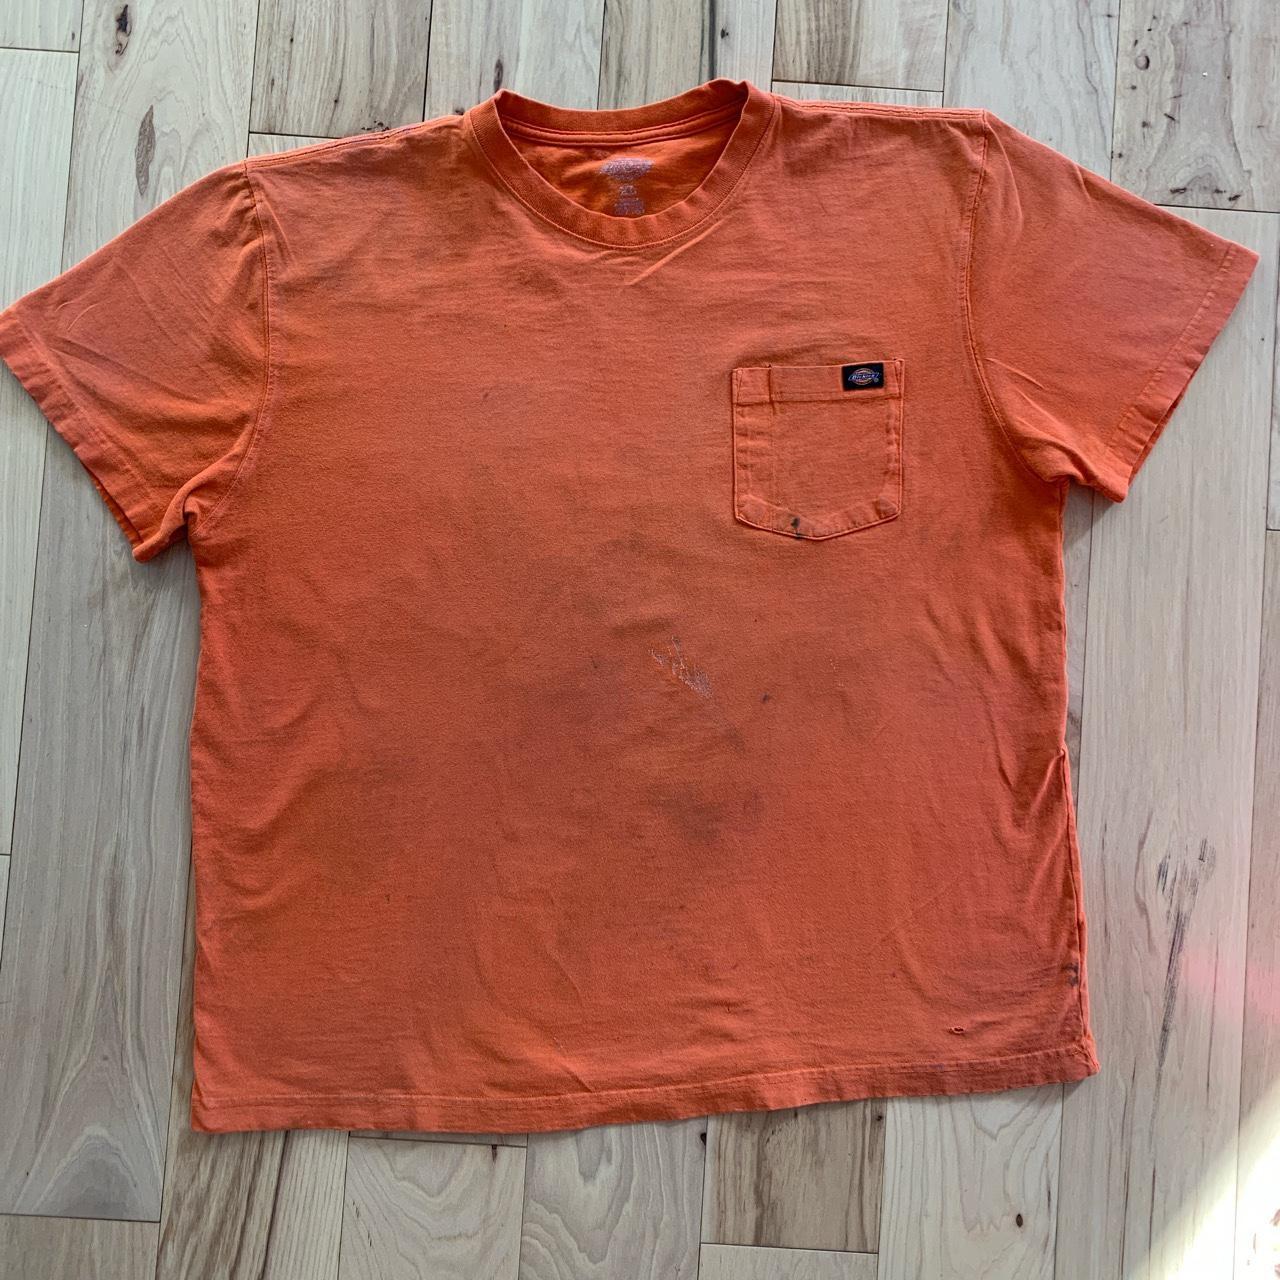 XL Vintage Dickies T-shirt Solid orange Minor rip/... - Depop